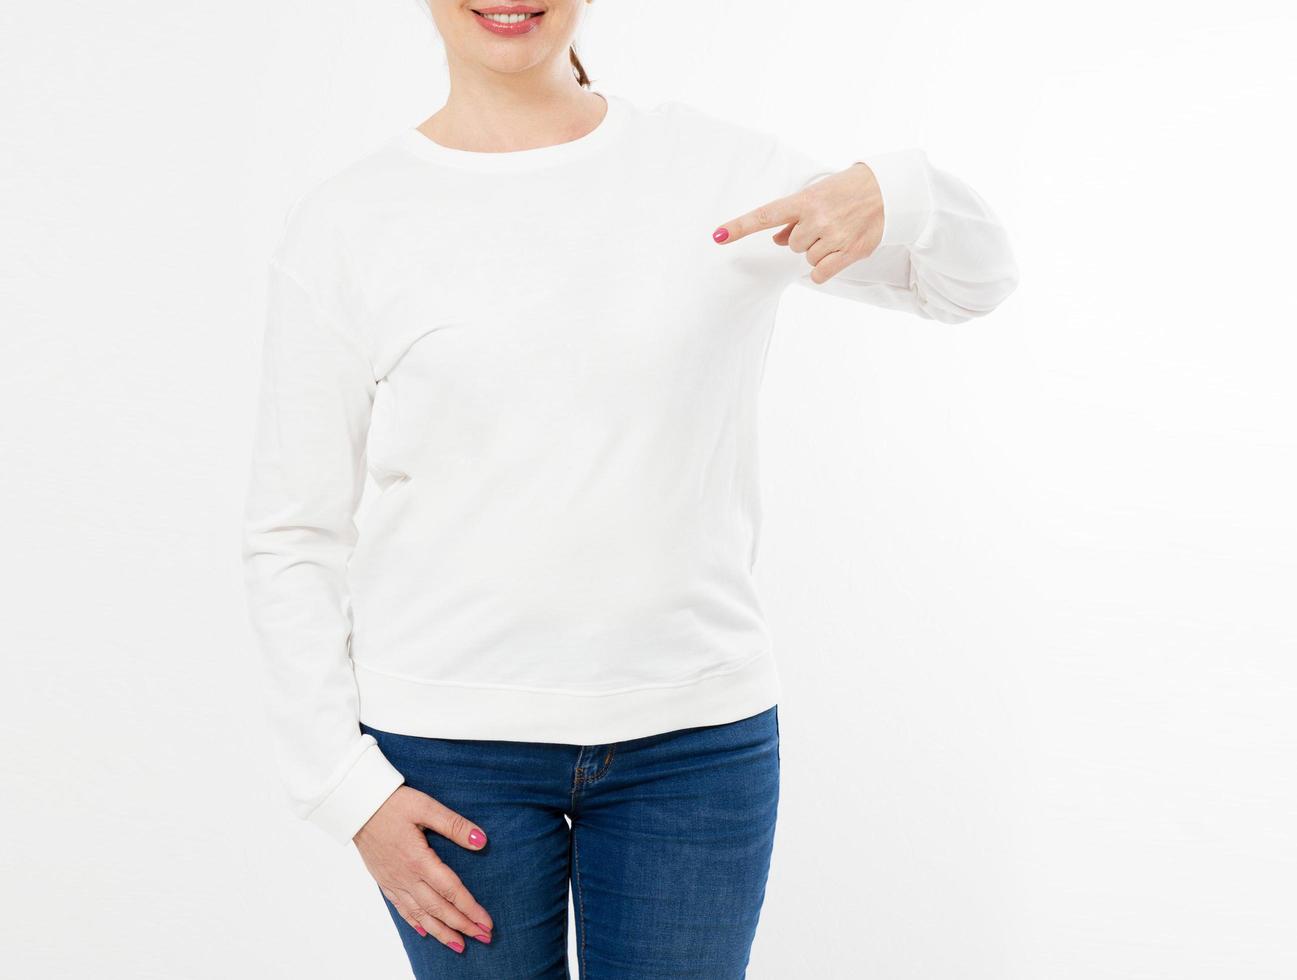 camiseta branca de manga comprida em uma mulher de meia-idade em jeans e mão pontiaguda isolada, frente, imagem cortada de maquete foto